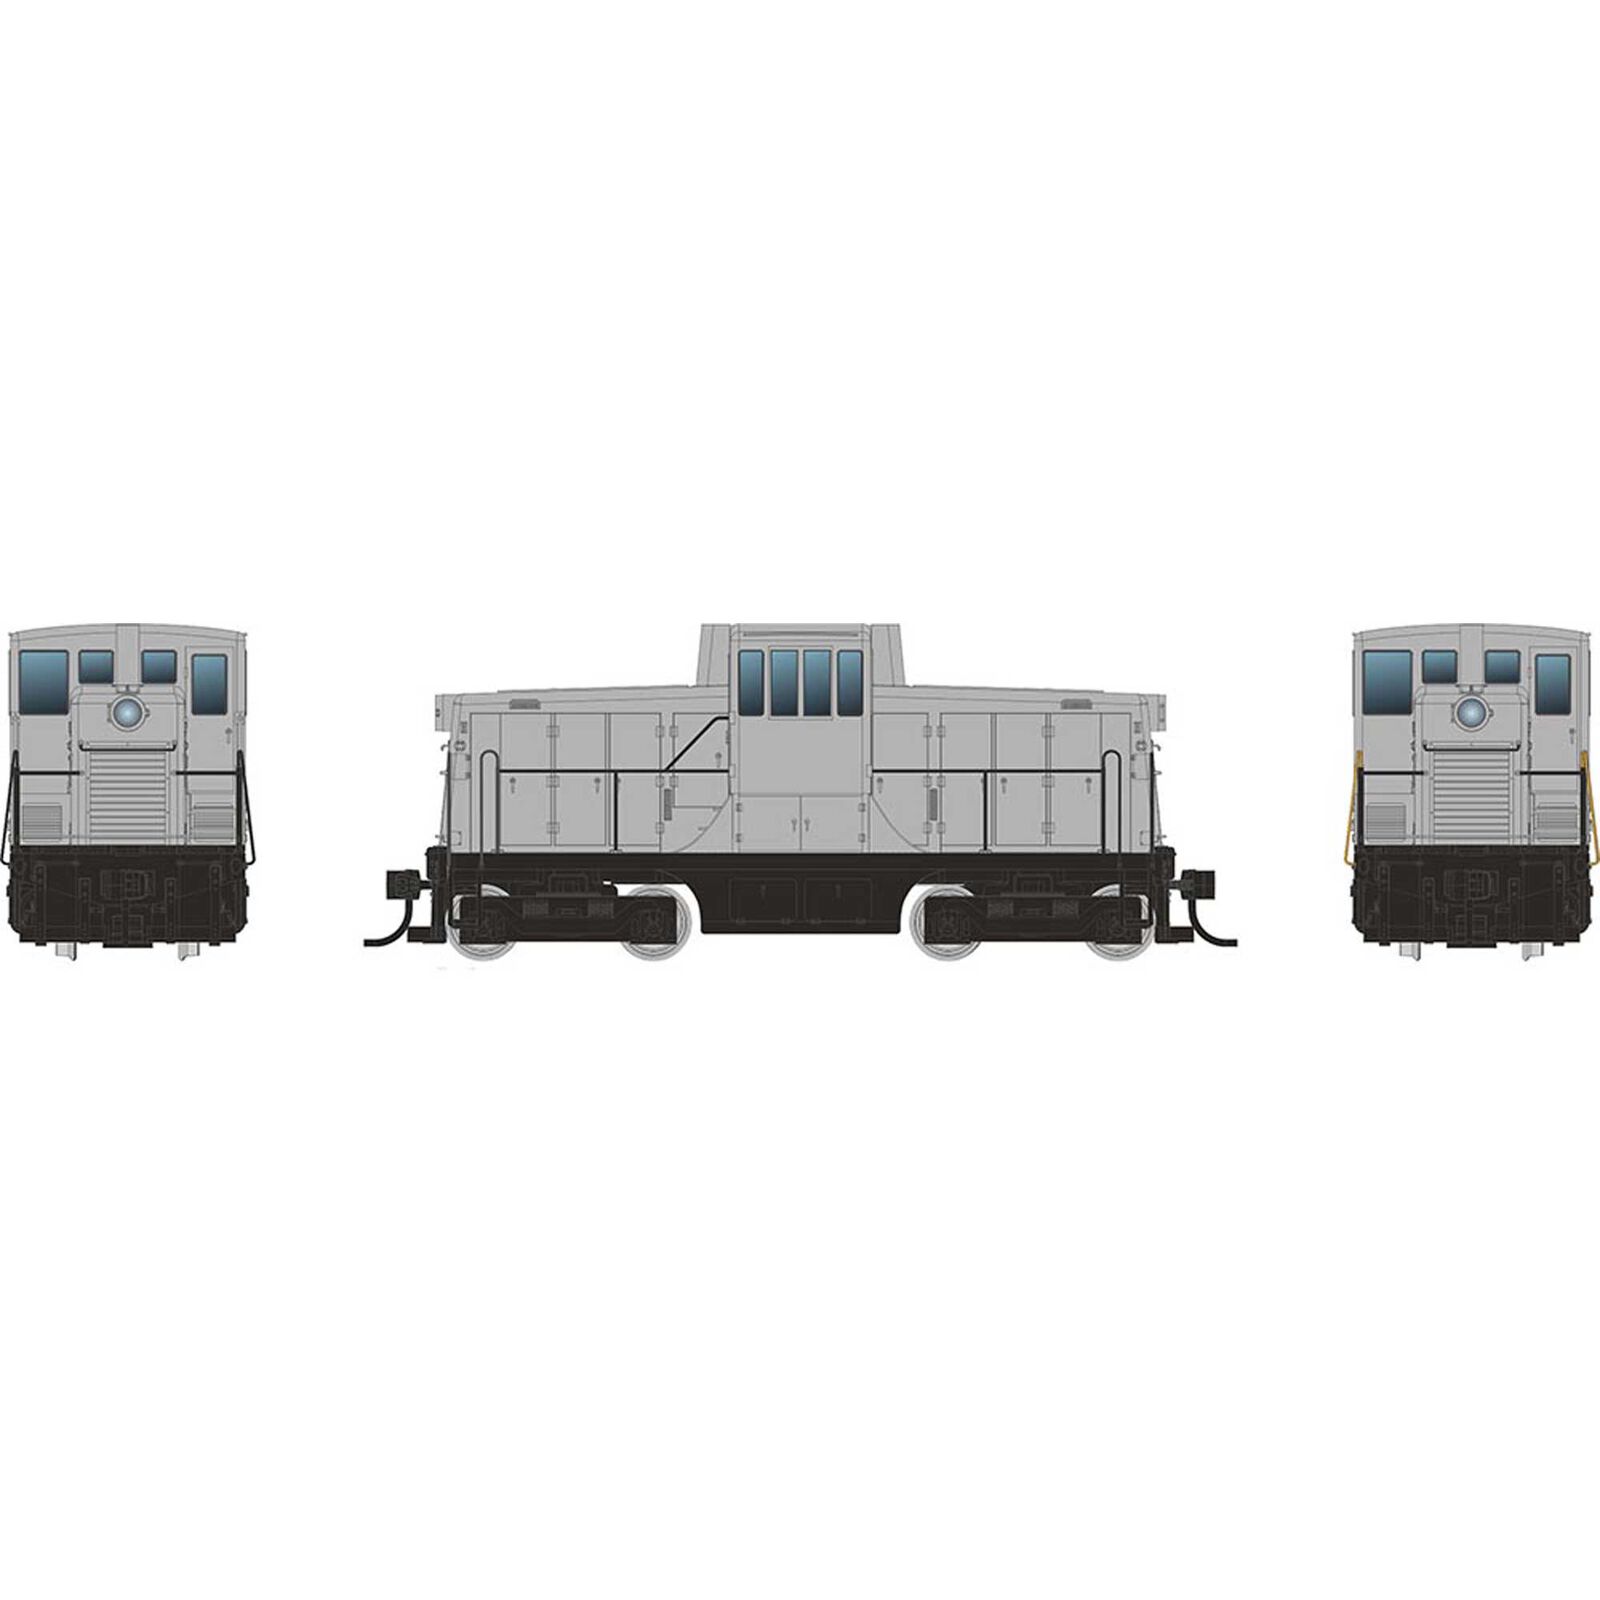 HO GE 44 Tonner Switcher Locomotive, Undecorated Phase IVa Body